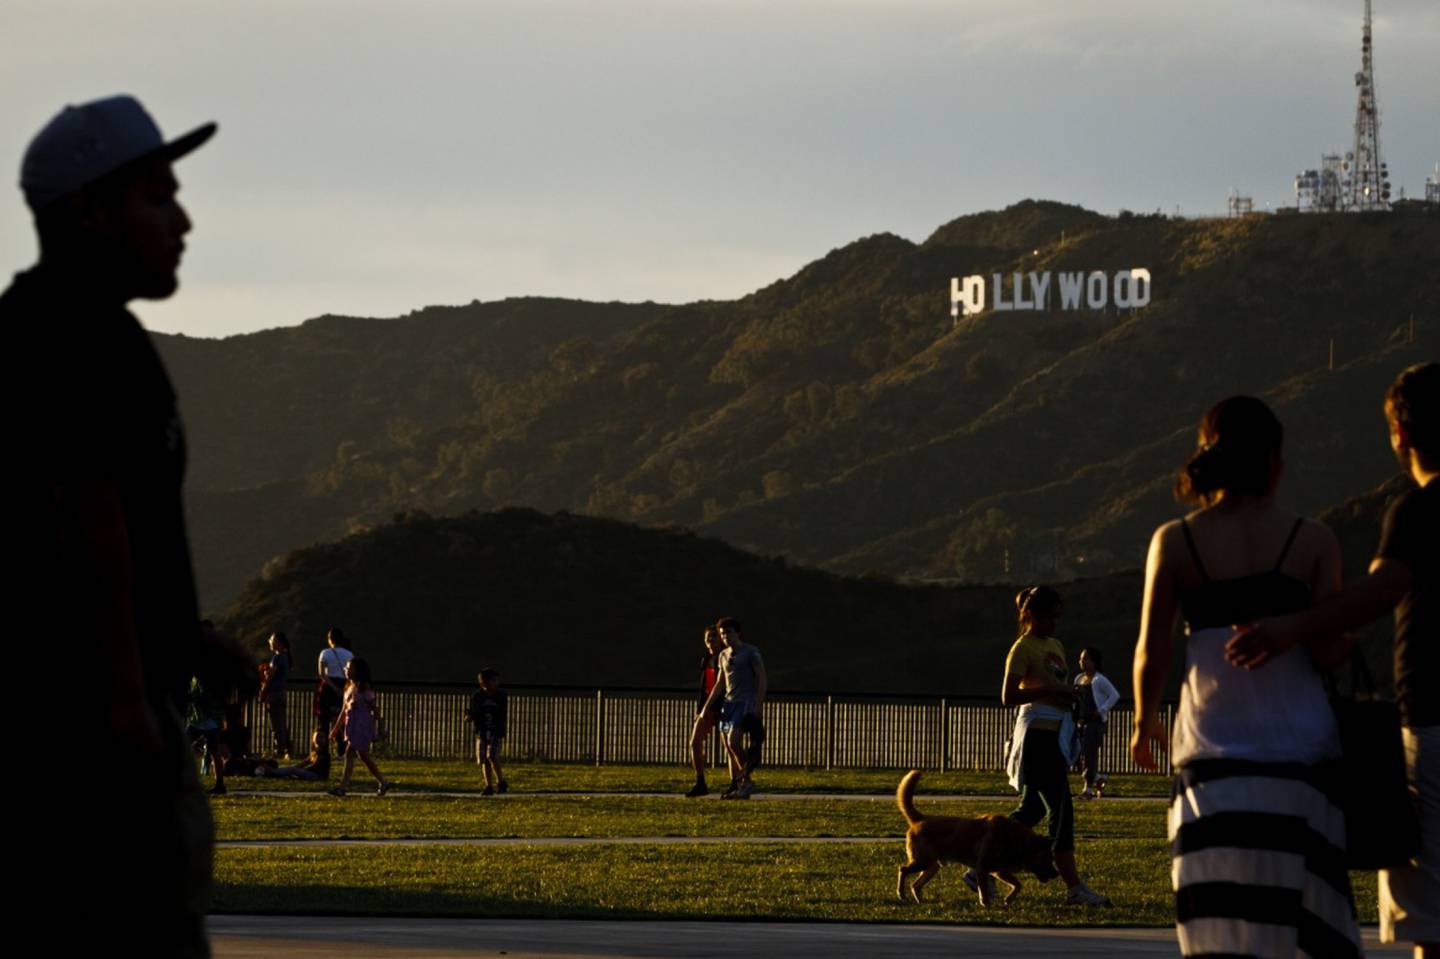 Turistas cerca del cartel de Hollywood en Los Ángeles. Fotógrafo: Patrick T. Fallon/Bloomberg